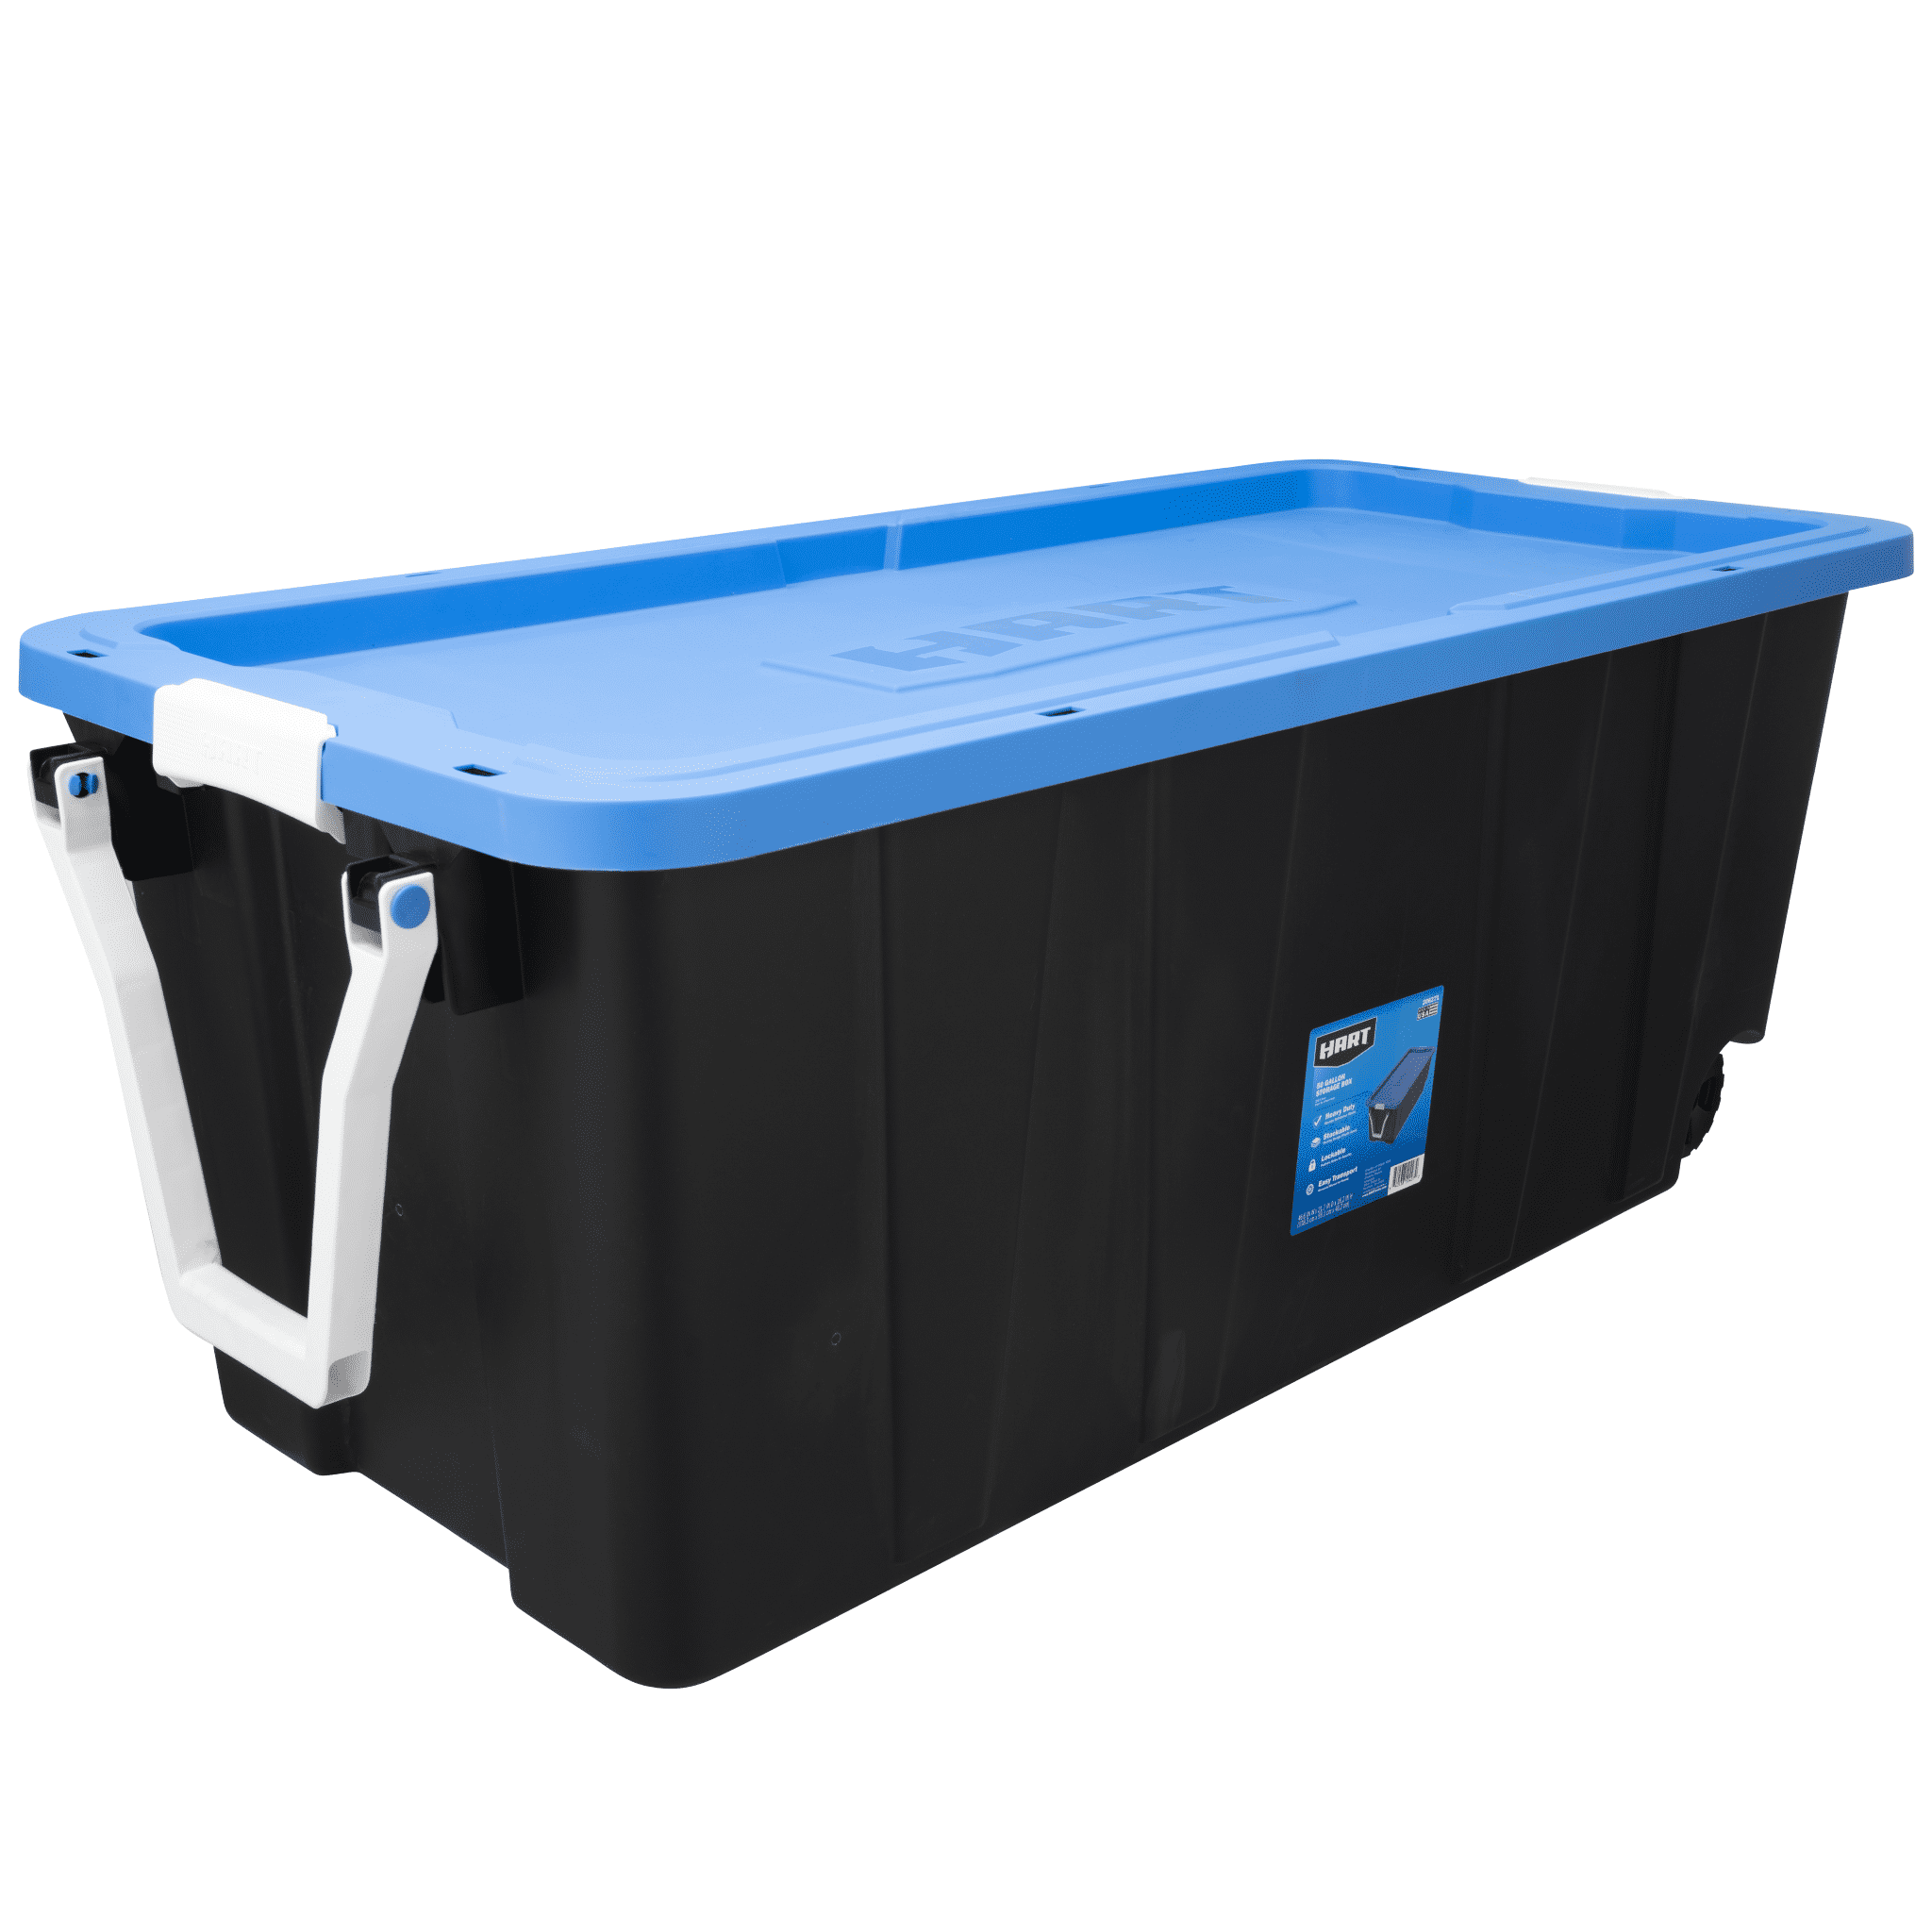 HART - 50 Gallon Heavy-Duty Wheeled Plastic Storage Bin, Black Base/ Blue Lid